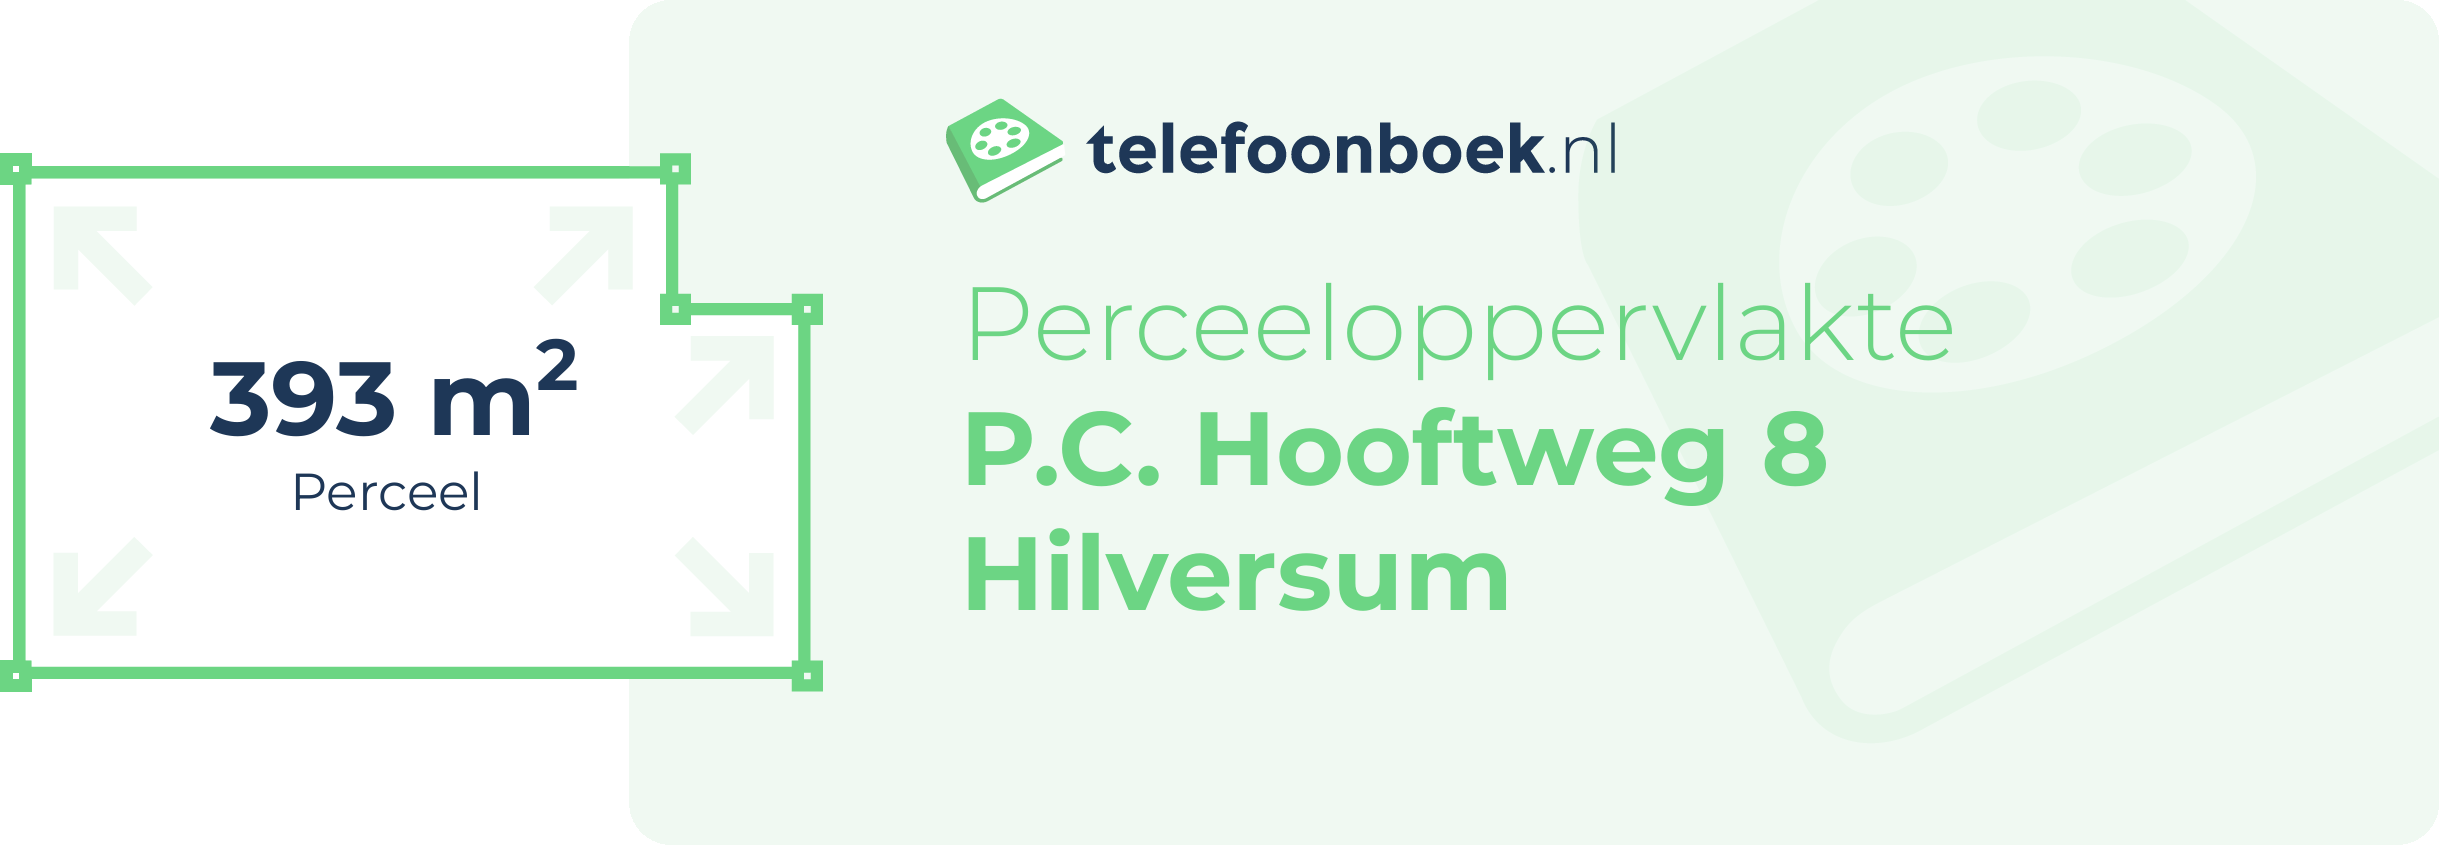 Perceeloppervlakte P.C. Hooftweg 8 Hilversum